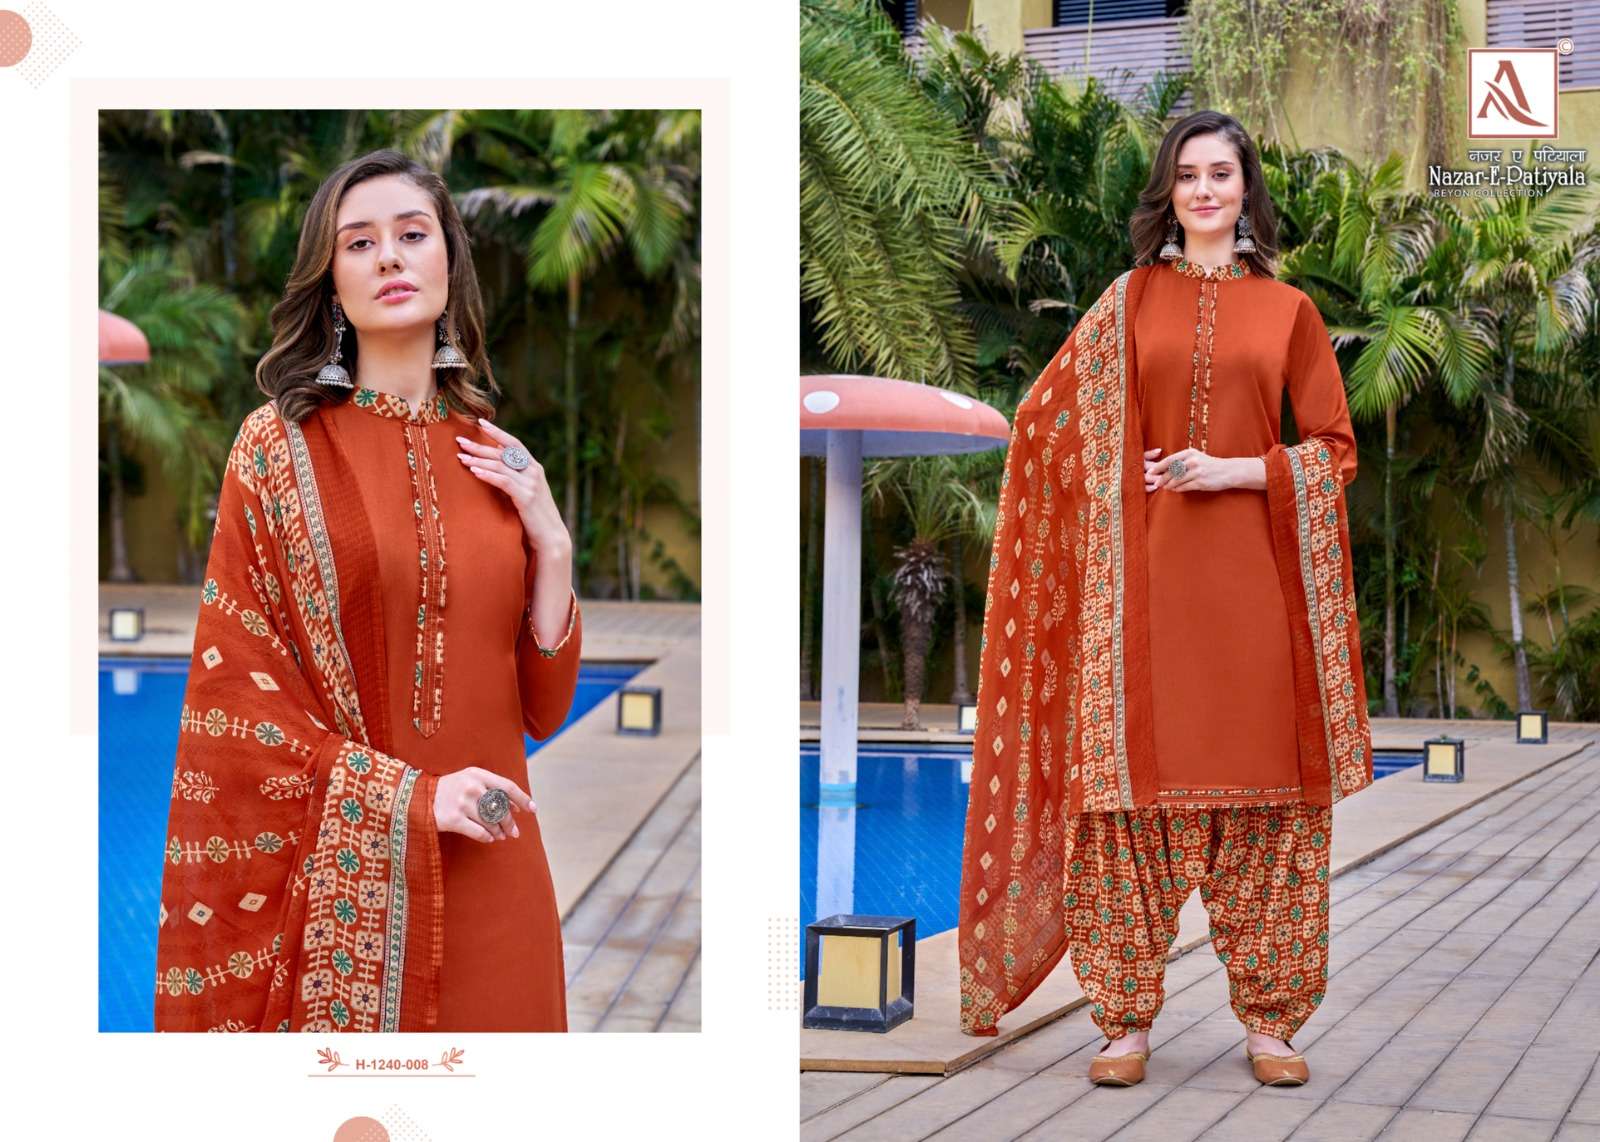 alok festive nazar-e-patiyala designer salwar kameez wholesaler surat gujarat